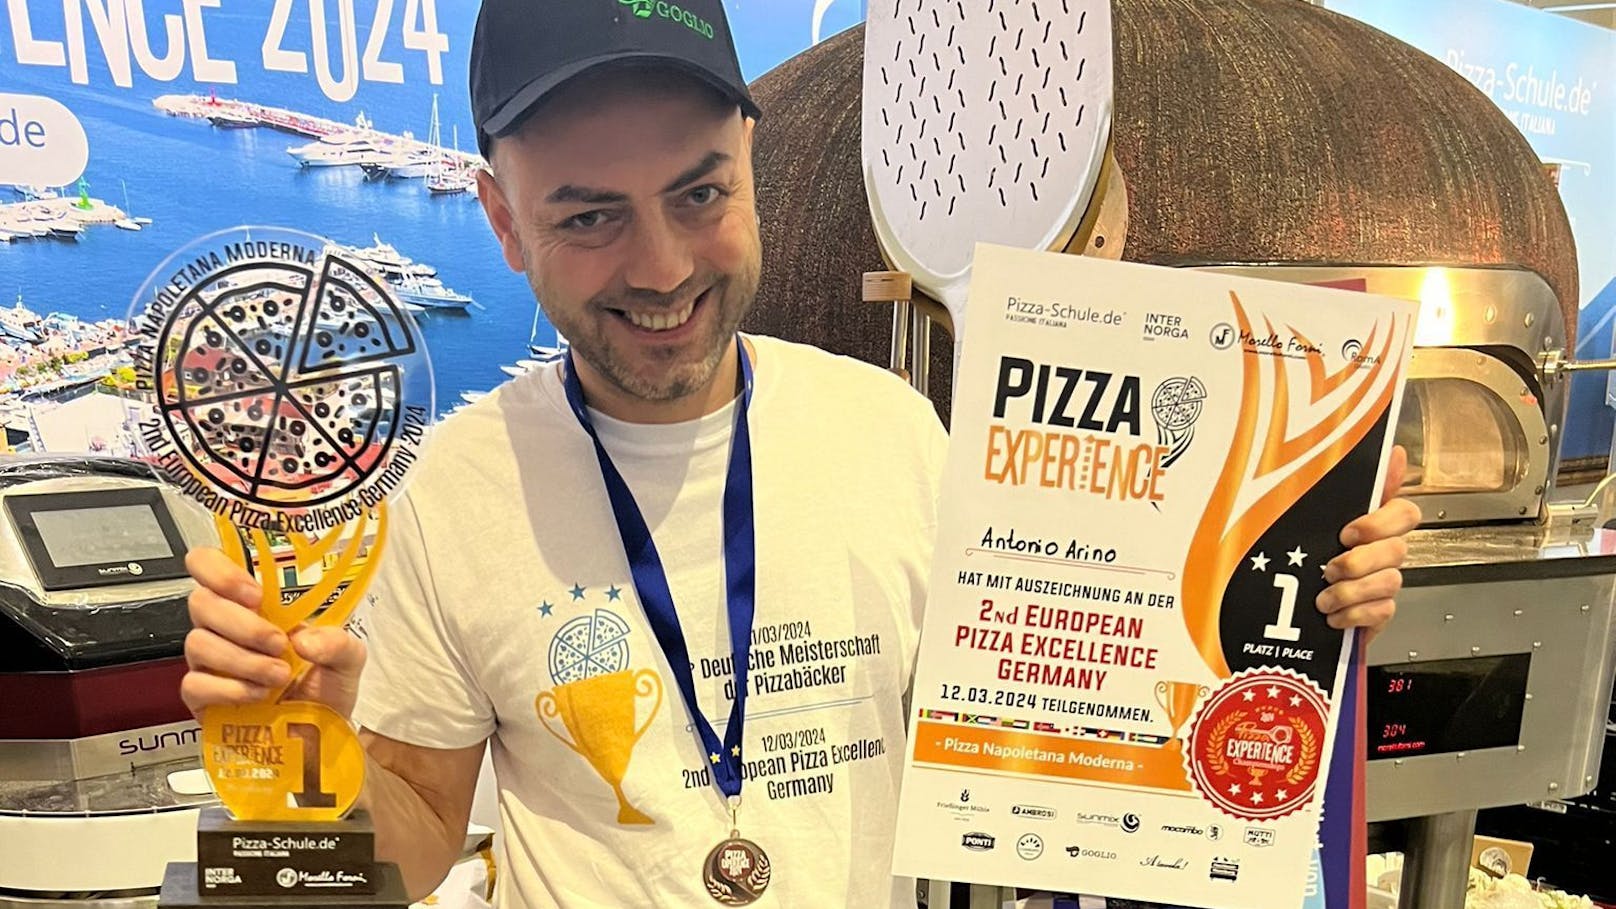 Antonio Arino, 38 Jahre alt und Mitglied des Küchenteams der Pizzeria "Mio" in der Donaustadt, wurde zum Europameister gekürt